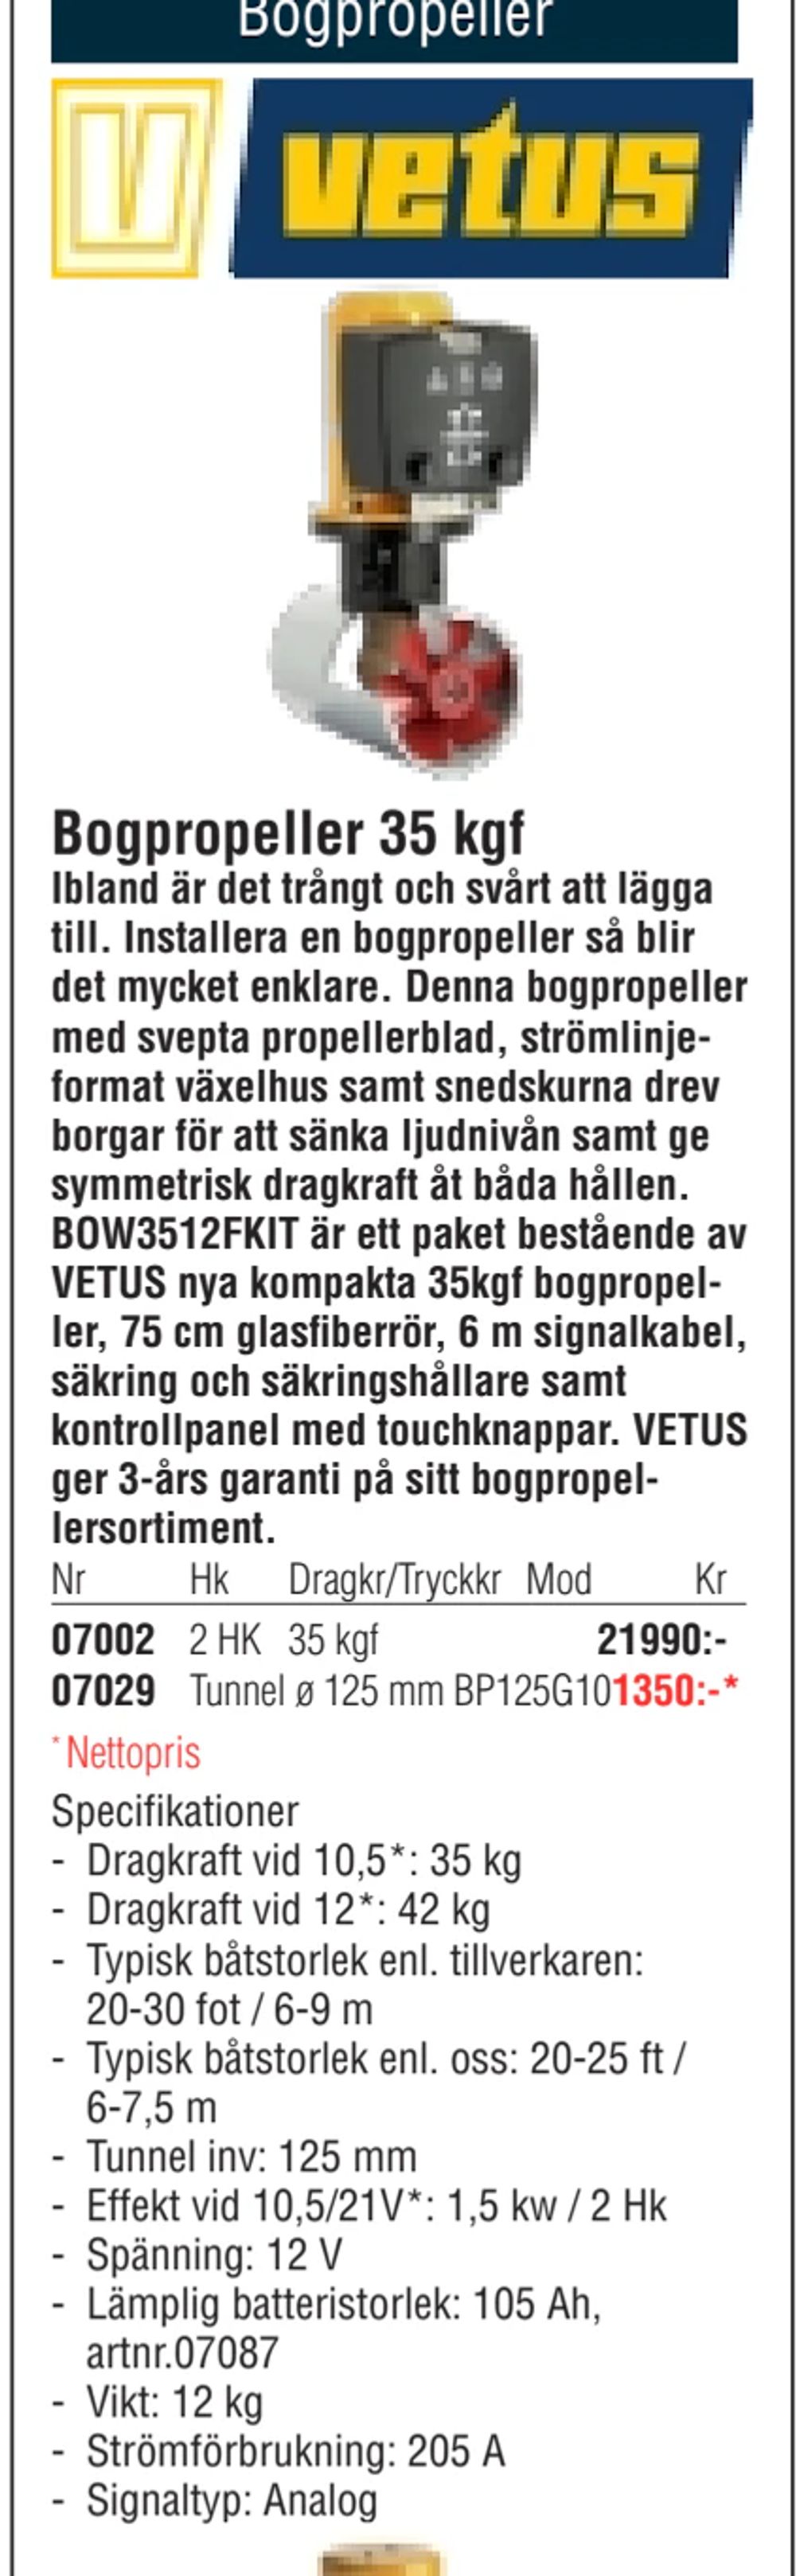 Erbjudanden på Bogpropeller 35 kgf från Erlandsons Brygga för 21 990 kr